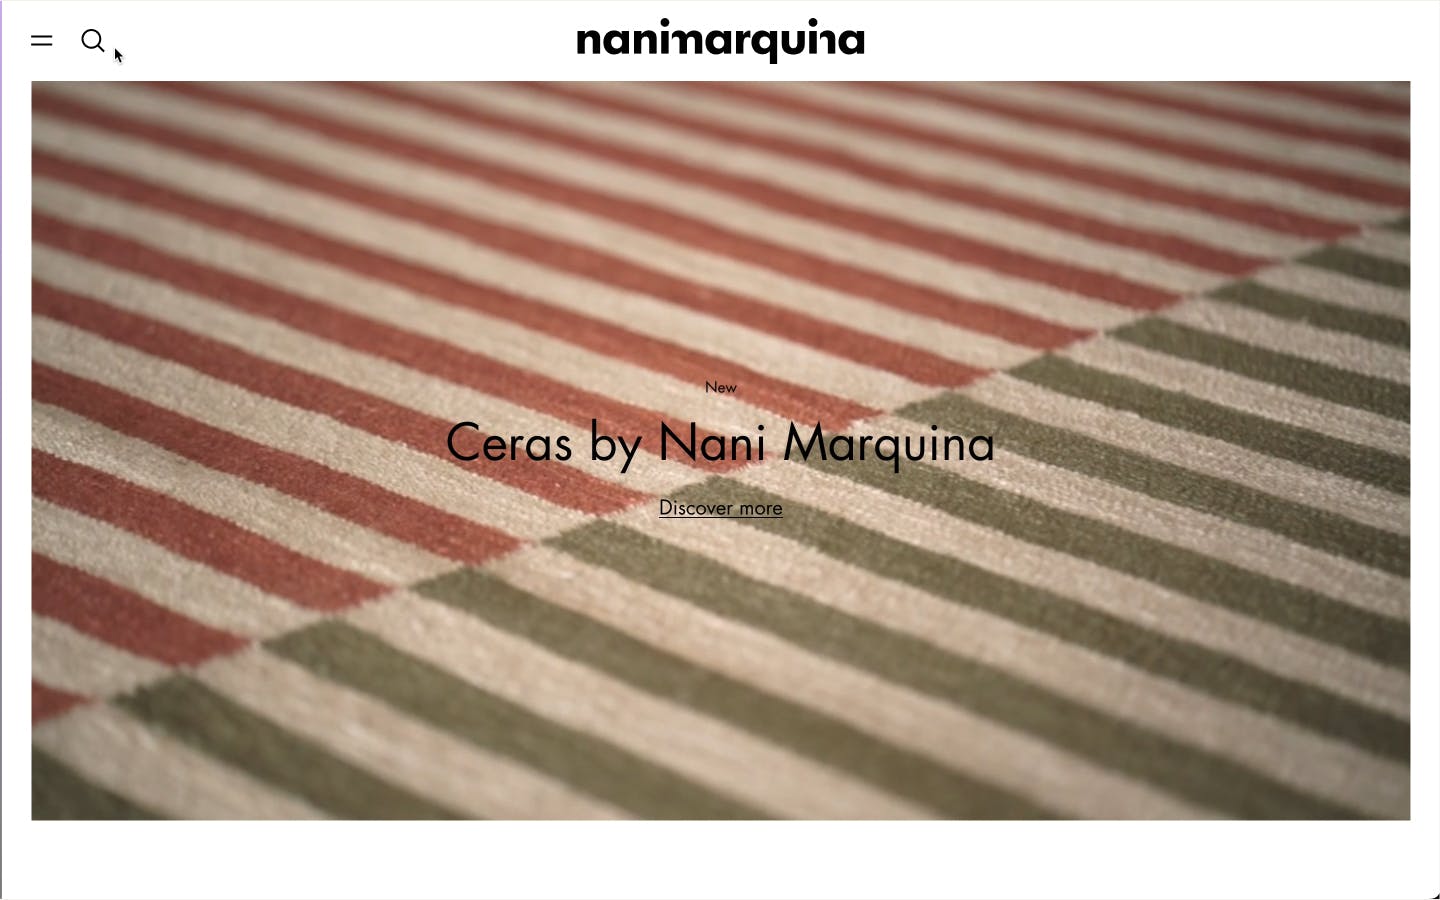 Image Nanimarquina -  INFORMATION ARQUITECTURE  •  UX DESIGN  •  UI DESIGN